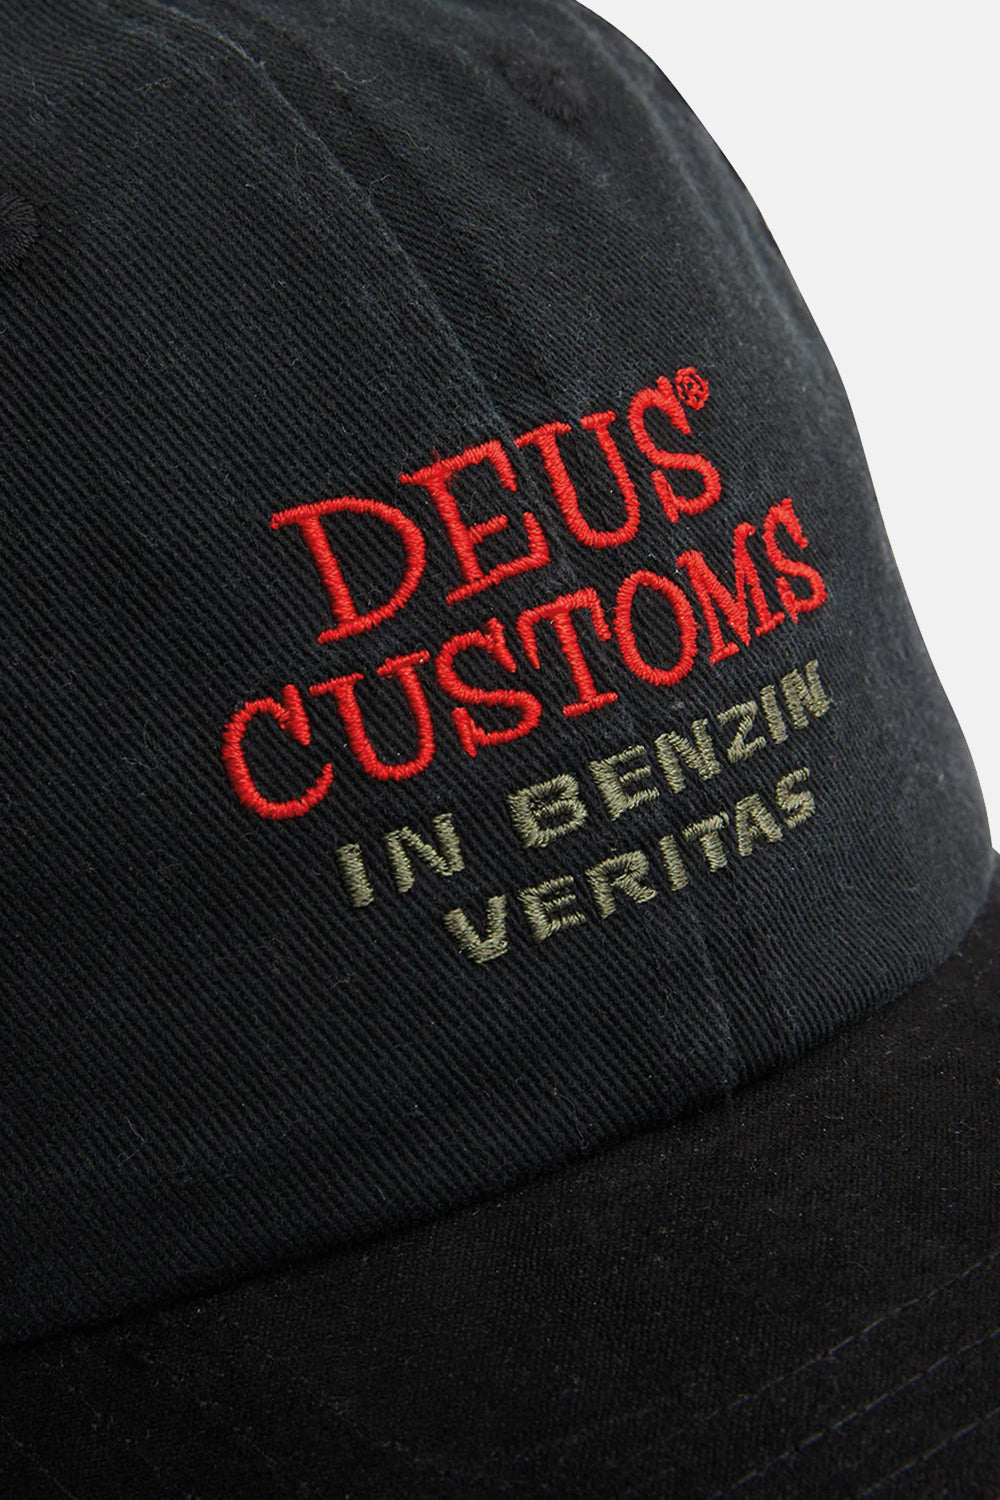 Deus Customs Portal Dad Cap (Black)